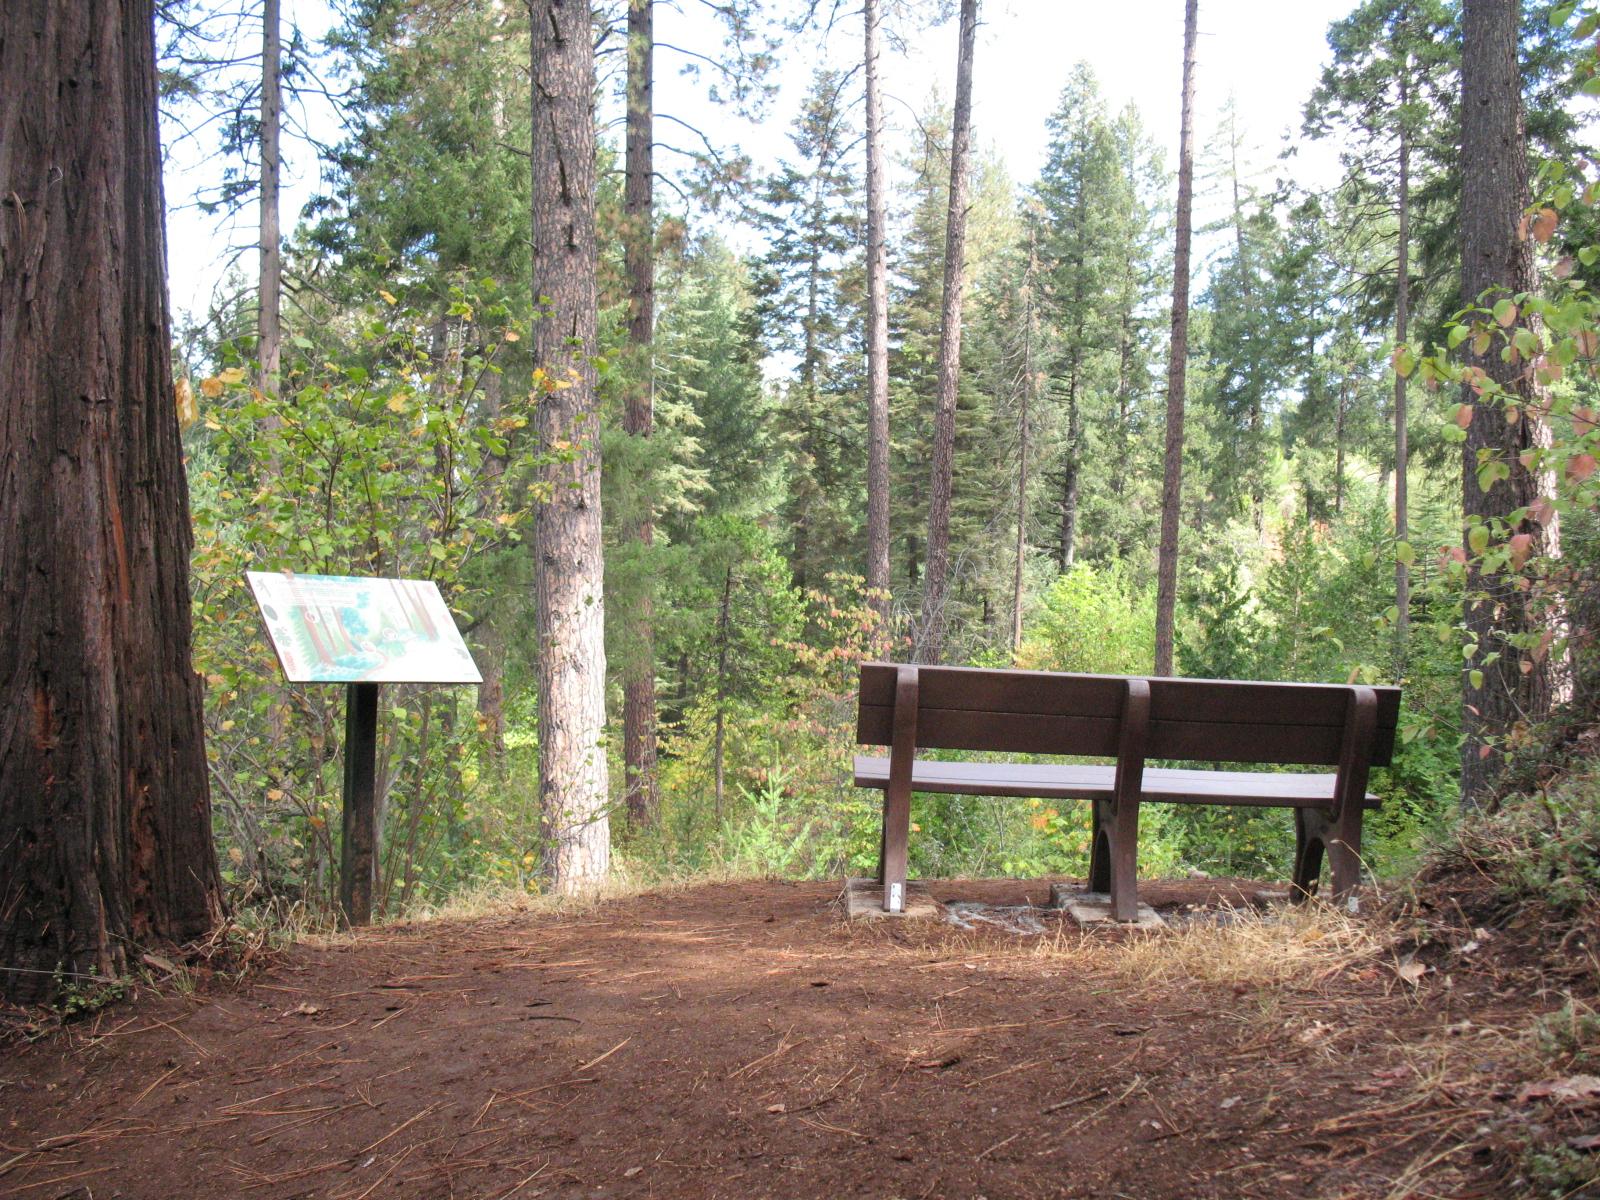 Orene Trail memorial bench back